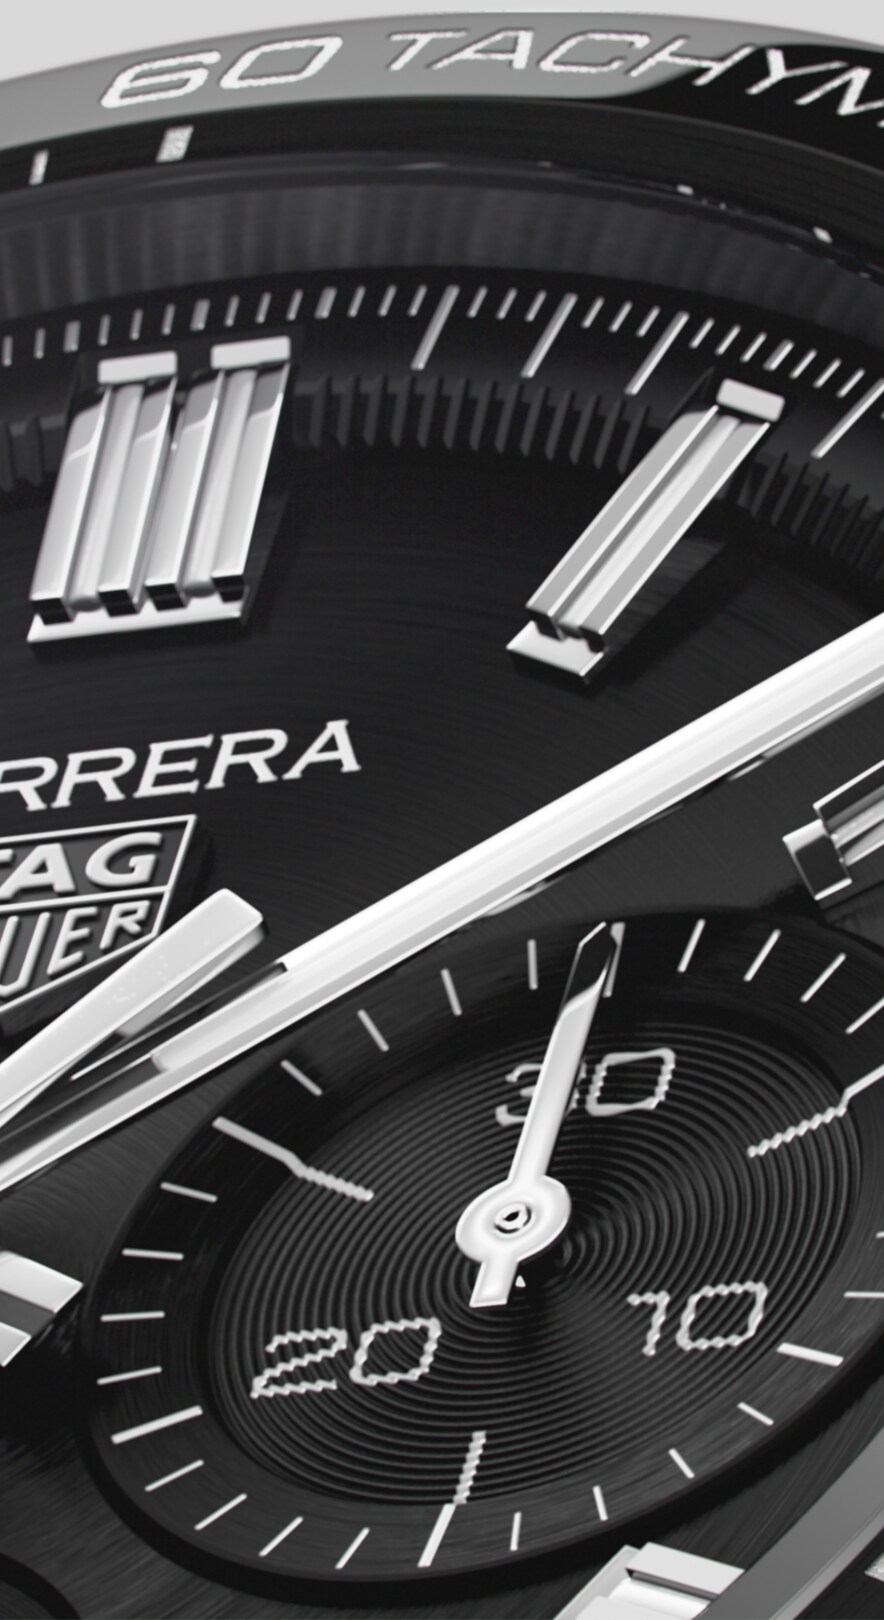 TAG Heuer 44MM Carrera Sport Automatic Chronograph Calibre 02 Green Di –  NAGI